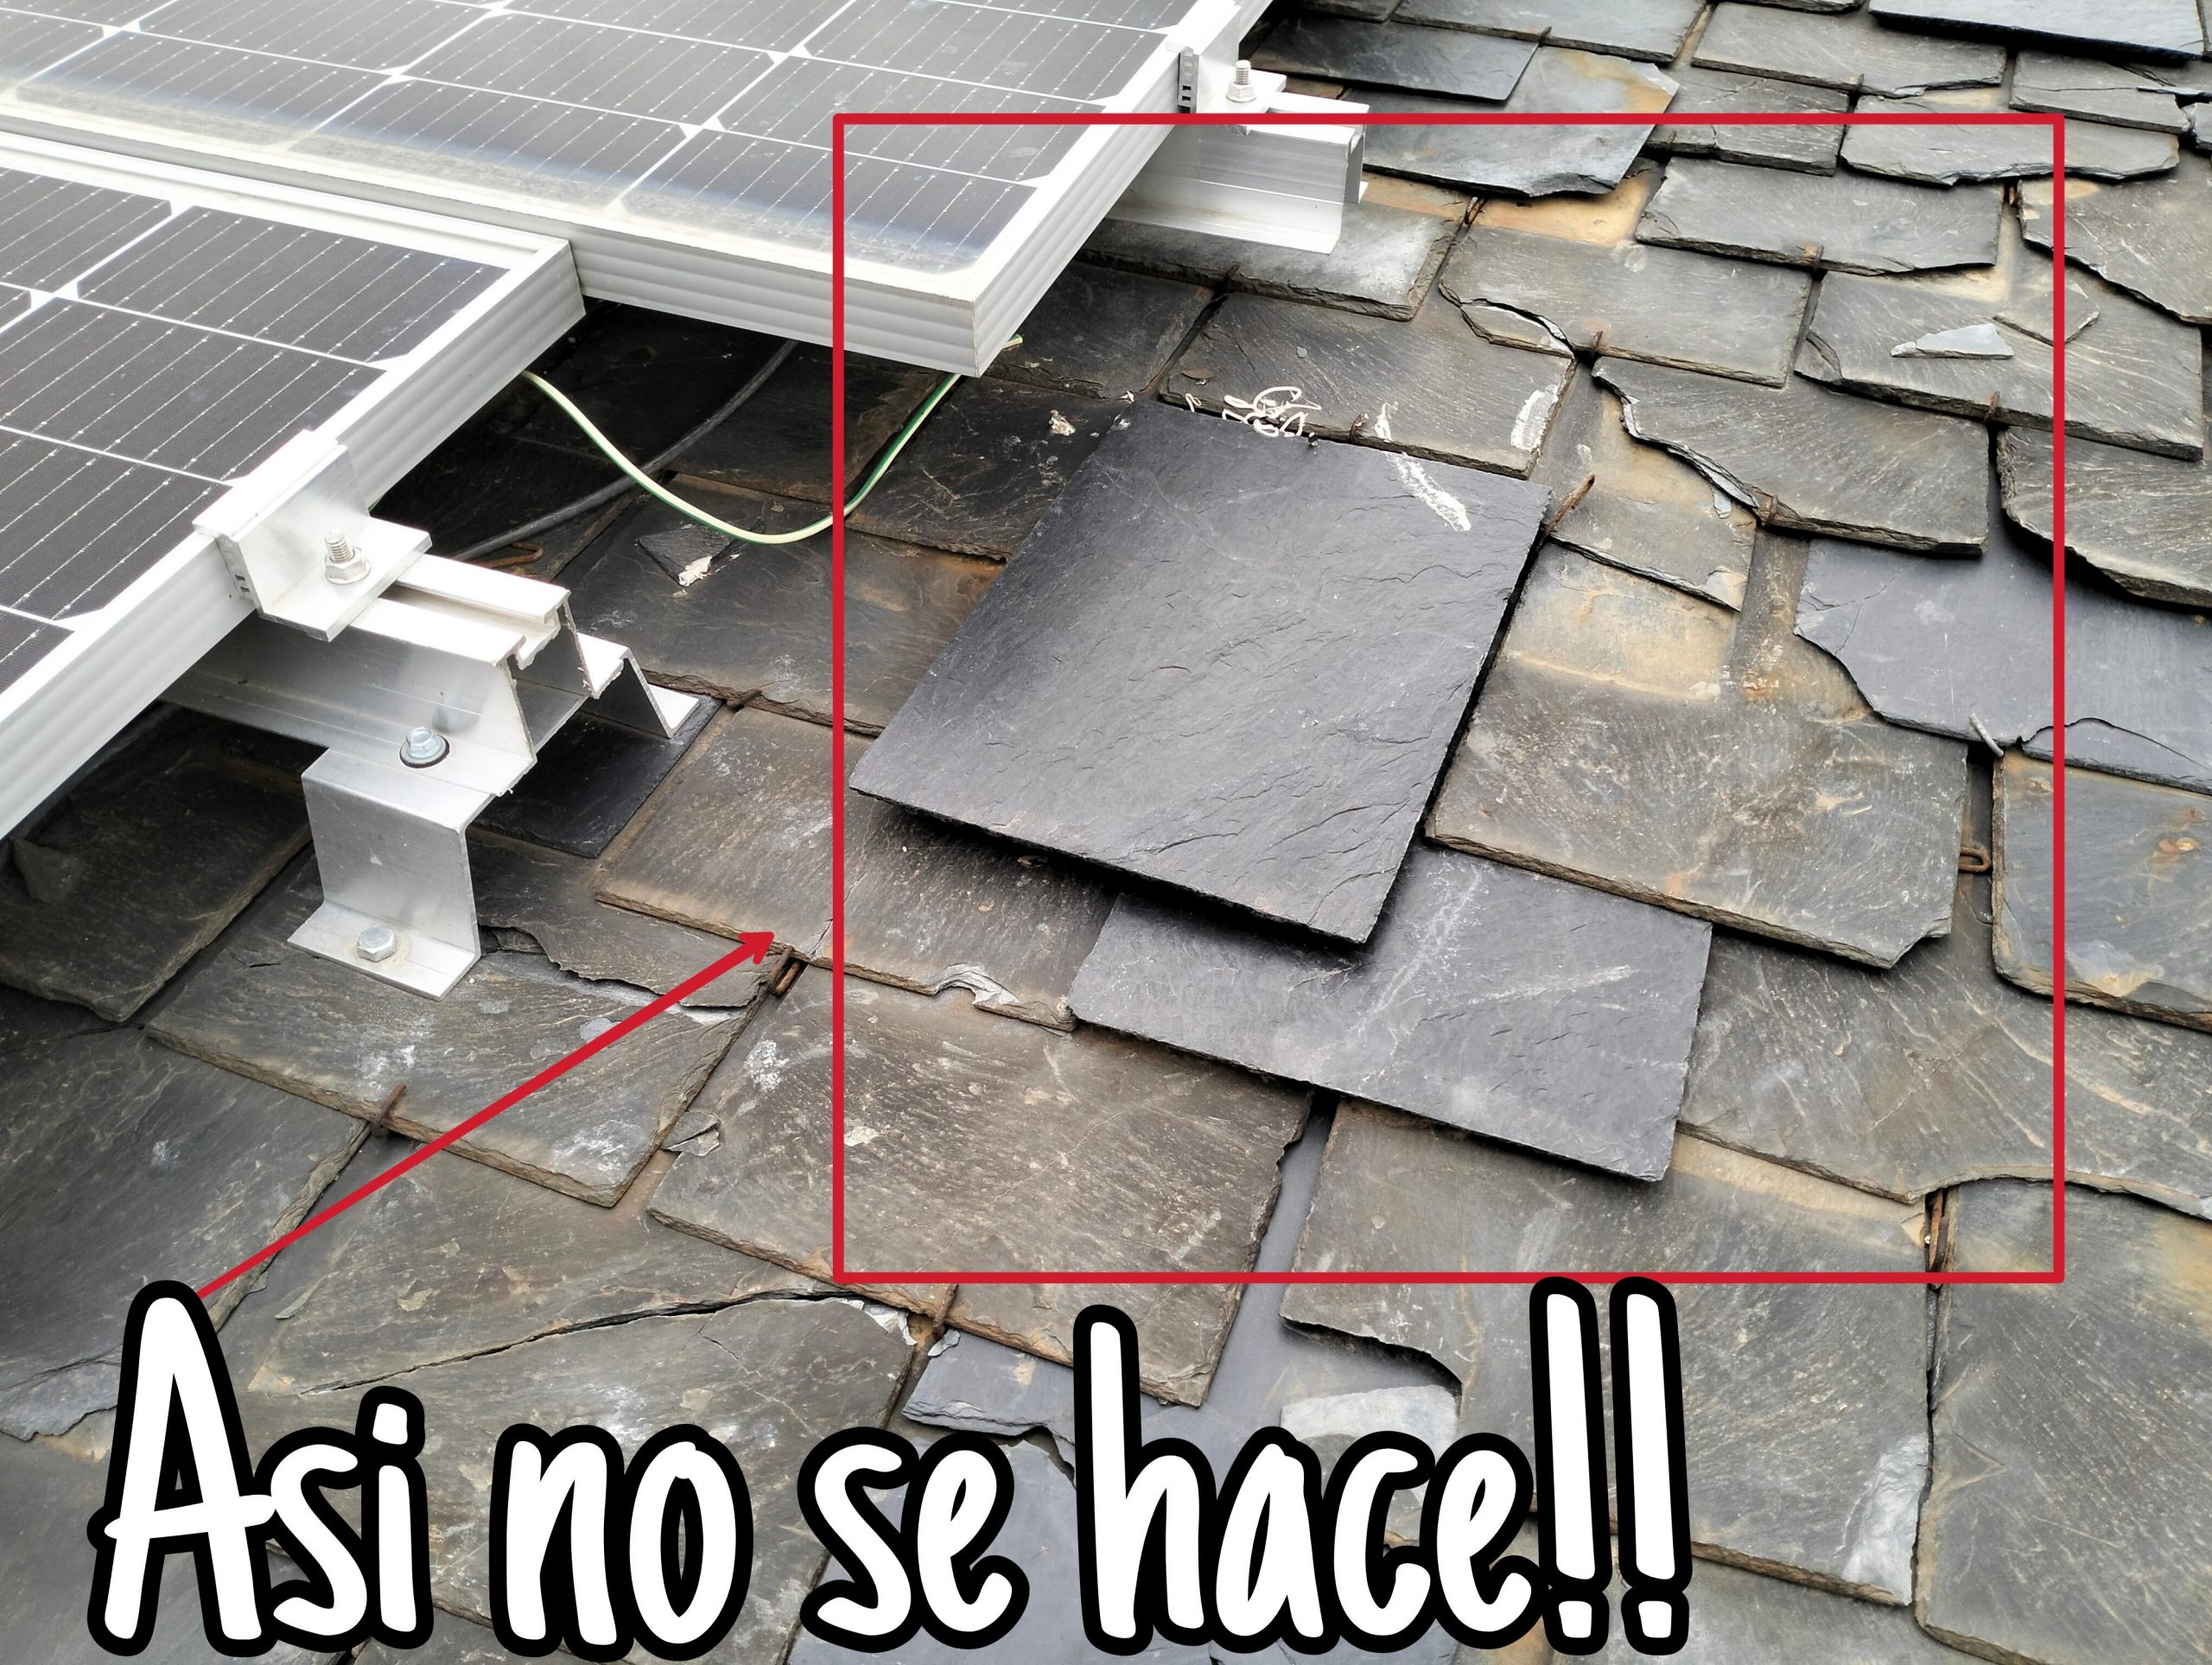 paneles solares en madrid tejados pizarra